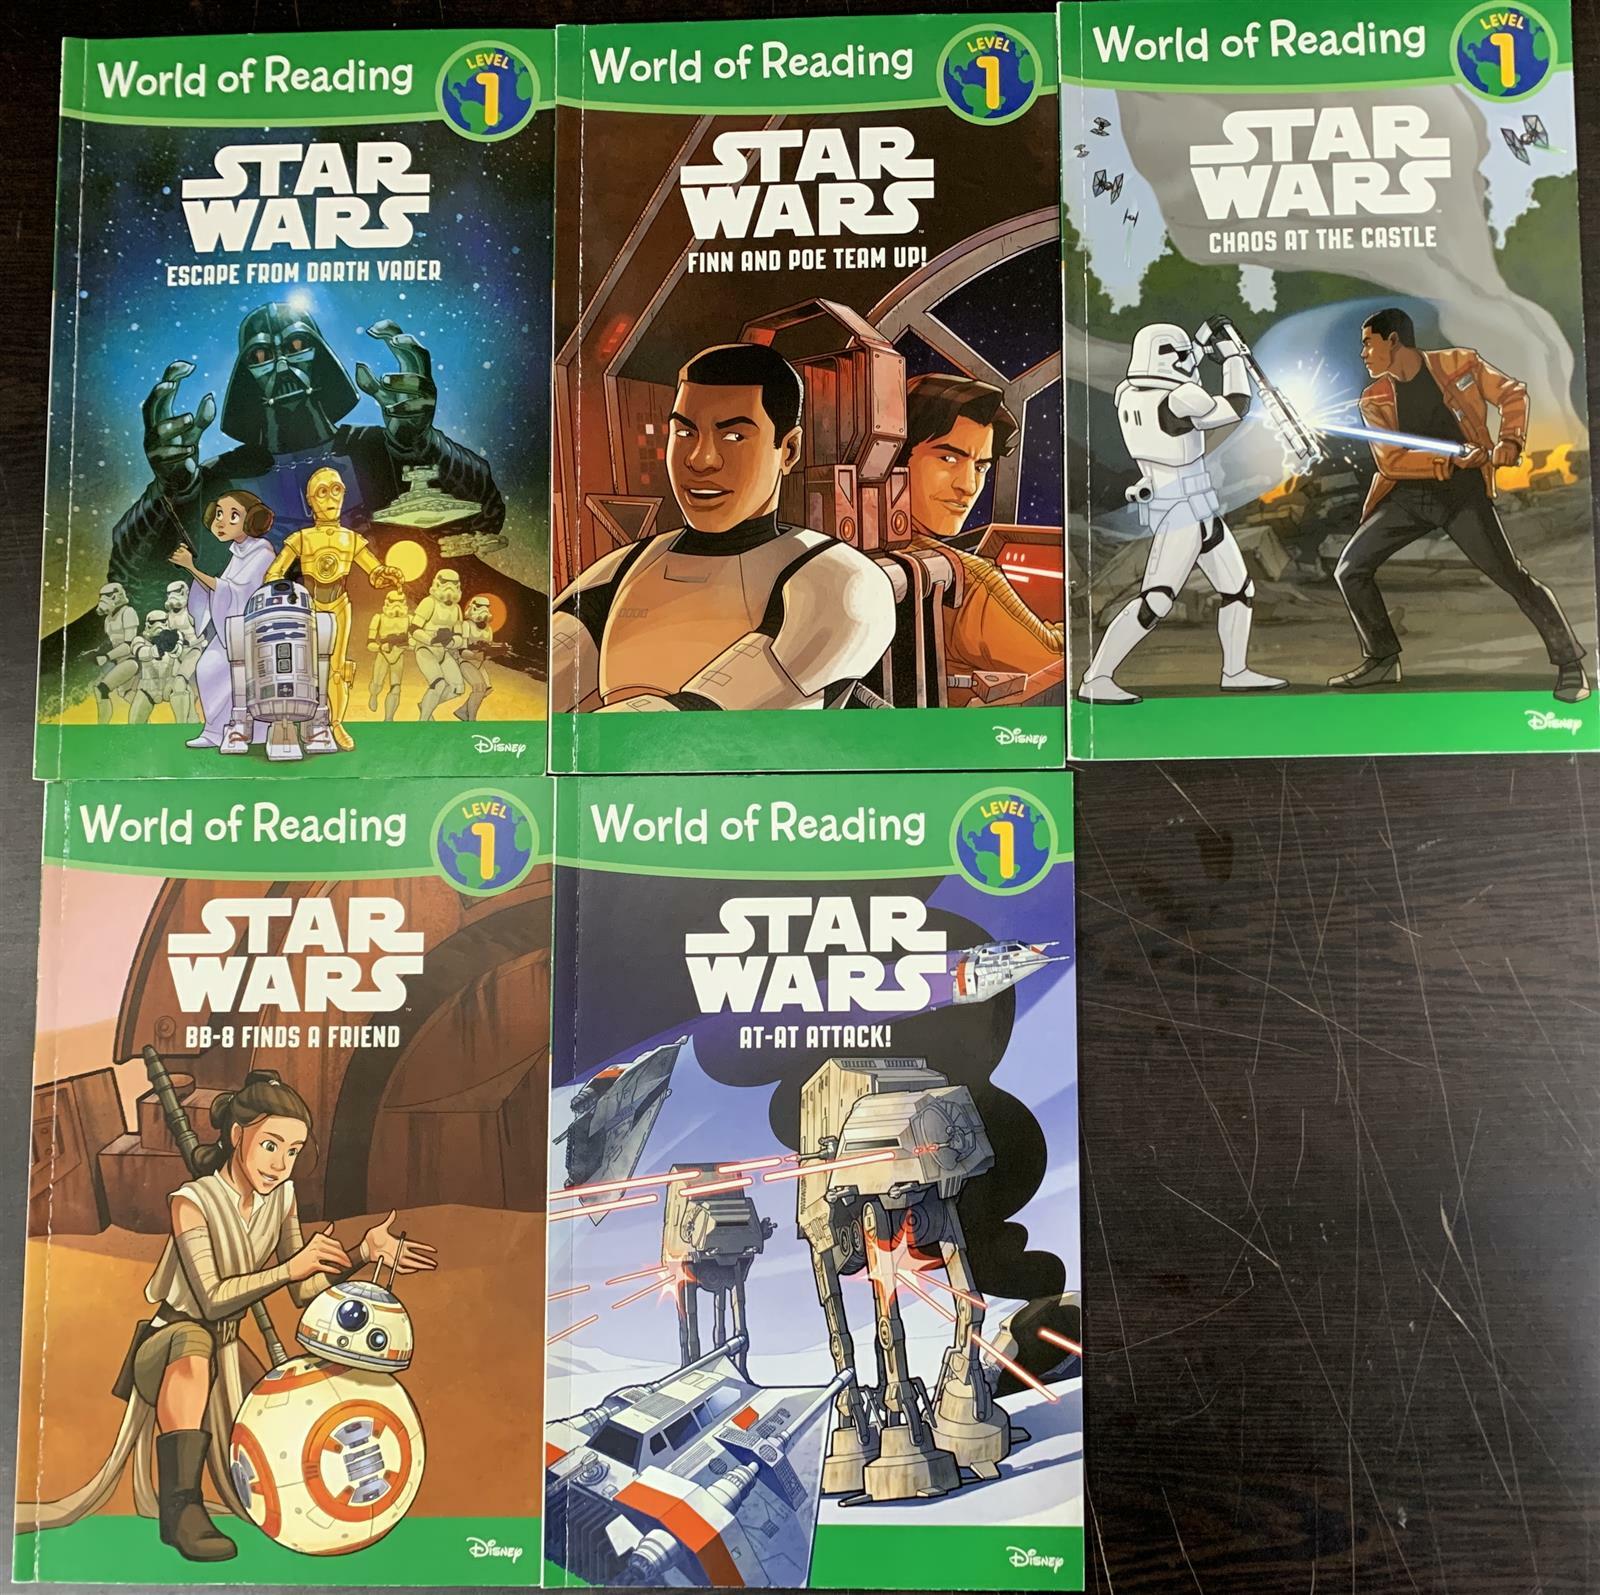 [중고] World of Reading Star Wars Boxed Set (Boxed Set)